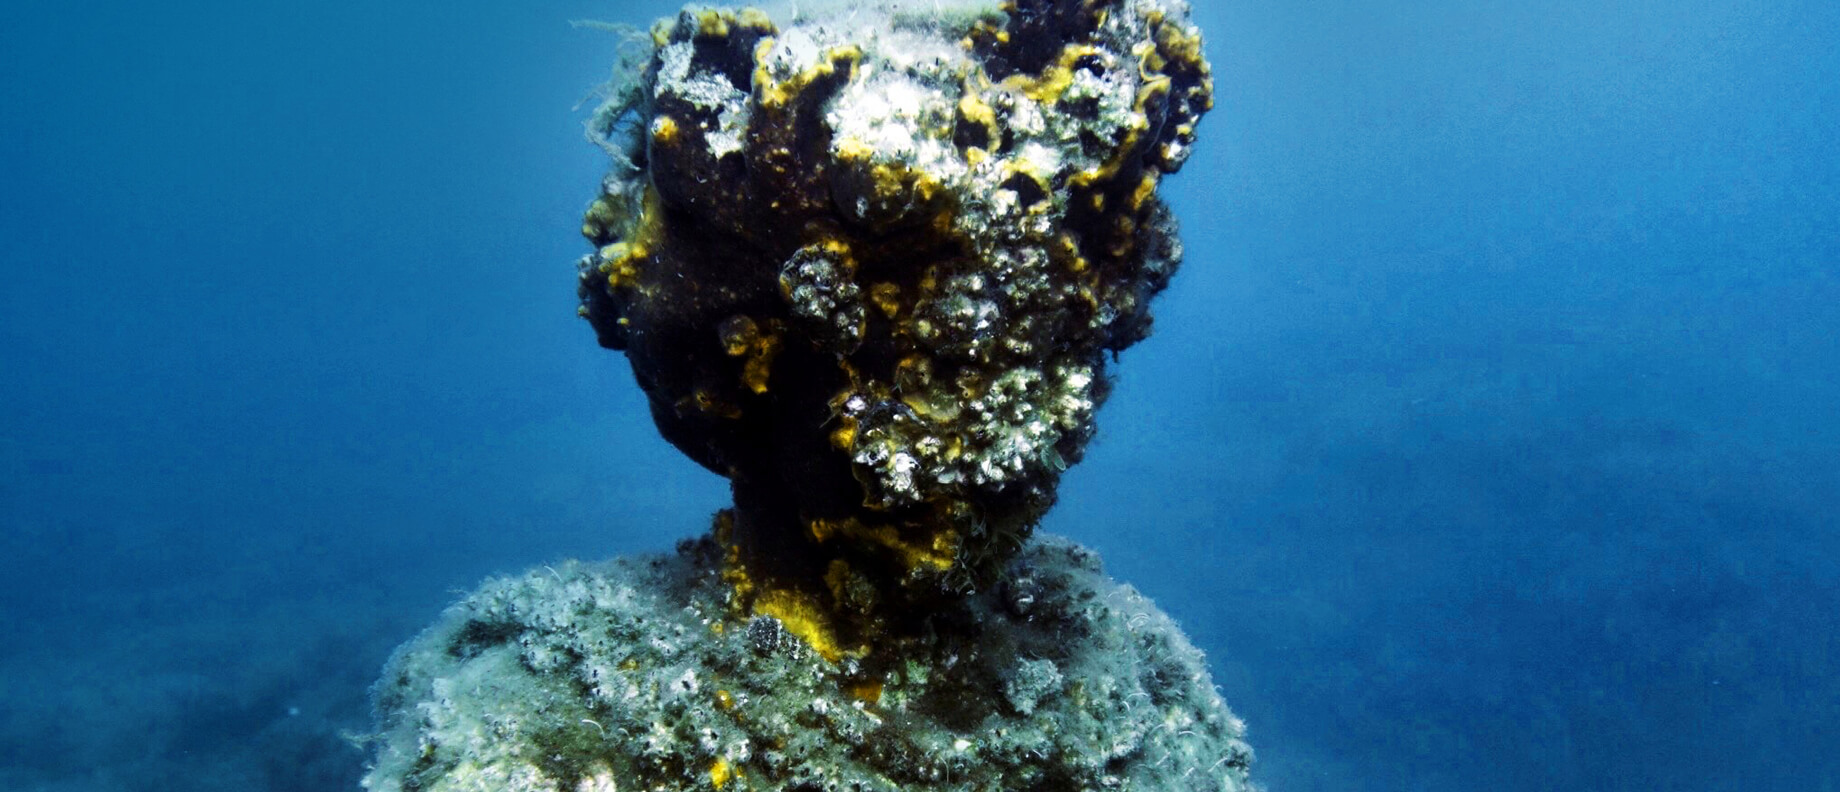 sea-heritage-baia-statue-archéologie